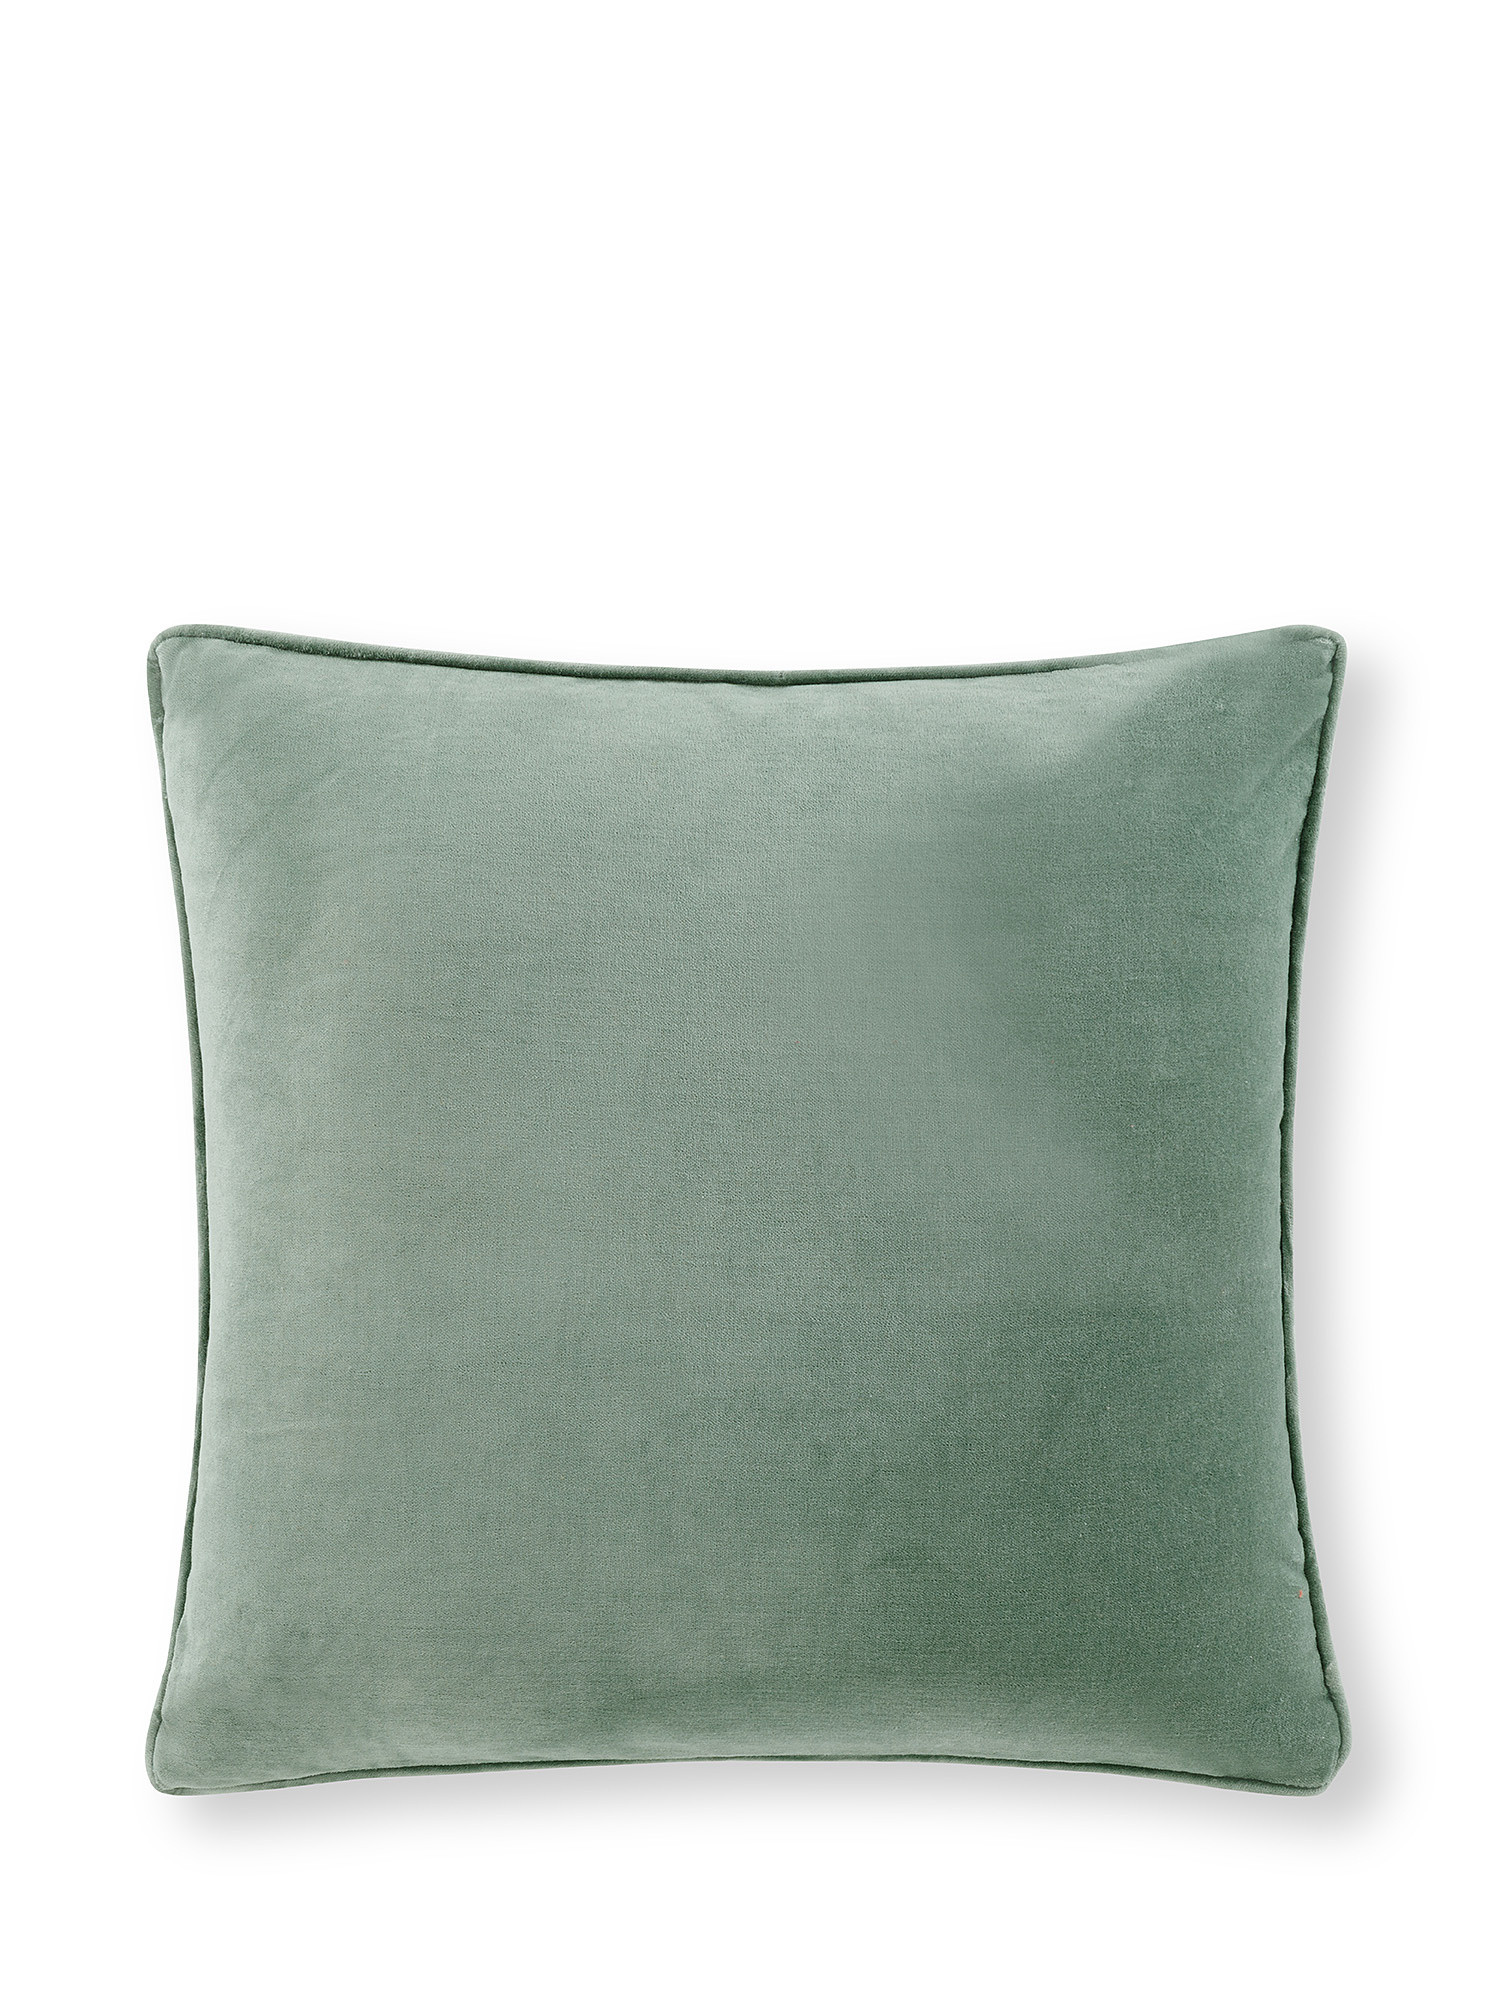 Cuscino velluto tinta unita 45x45cm, Verde chiaro, large image number 0